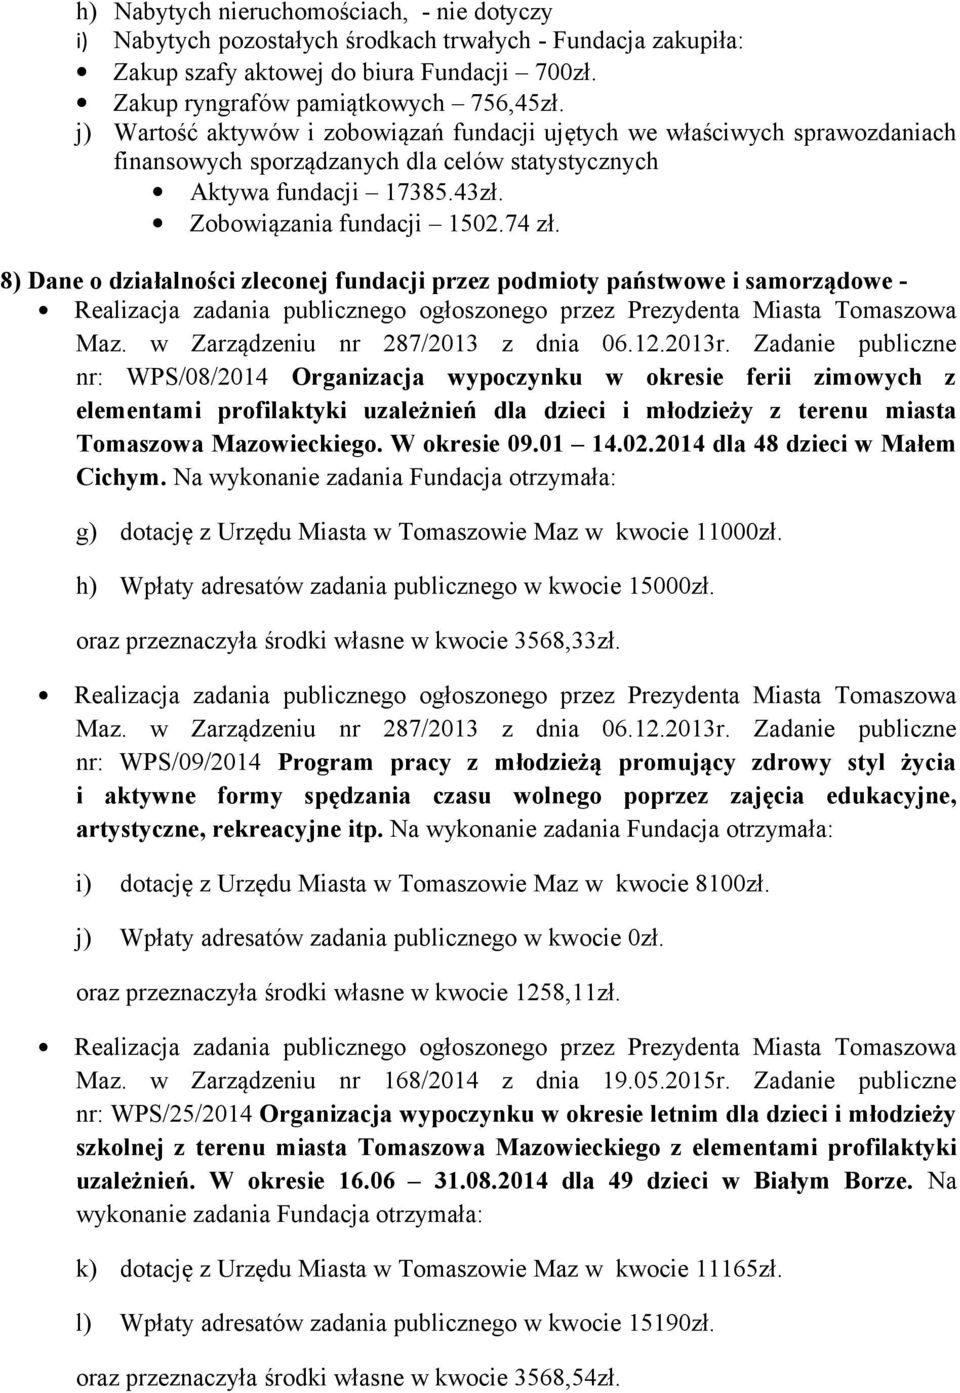 8) Dane o działalności zleconej fundacji przez podmioty państwowe i samorządowe - Maz. w Zarządzeniu nr 287/2013 z dnia 06.12.2013r.